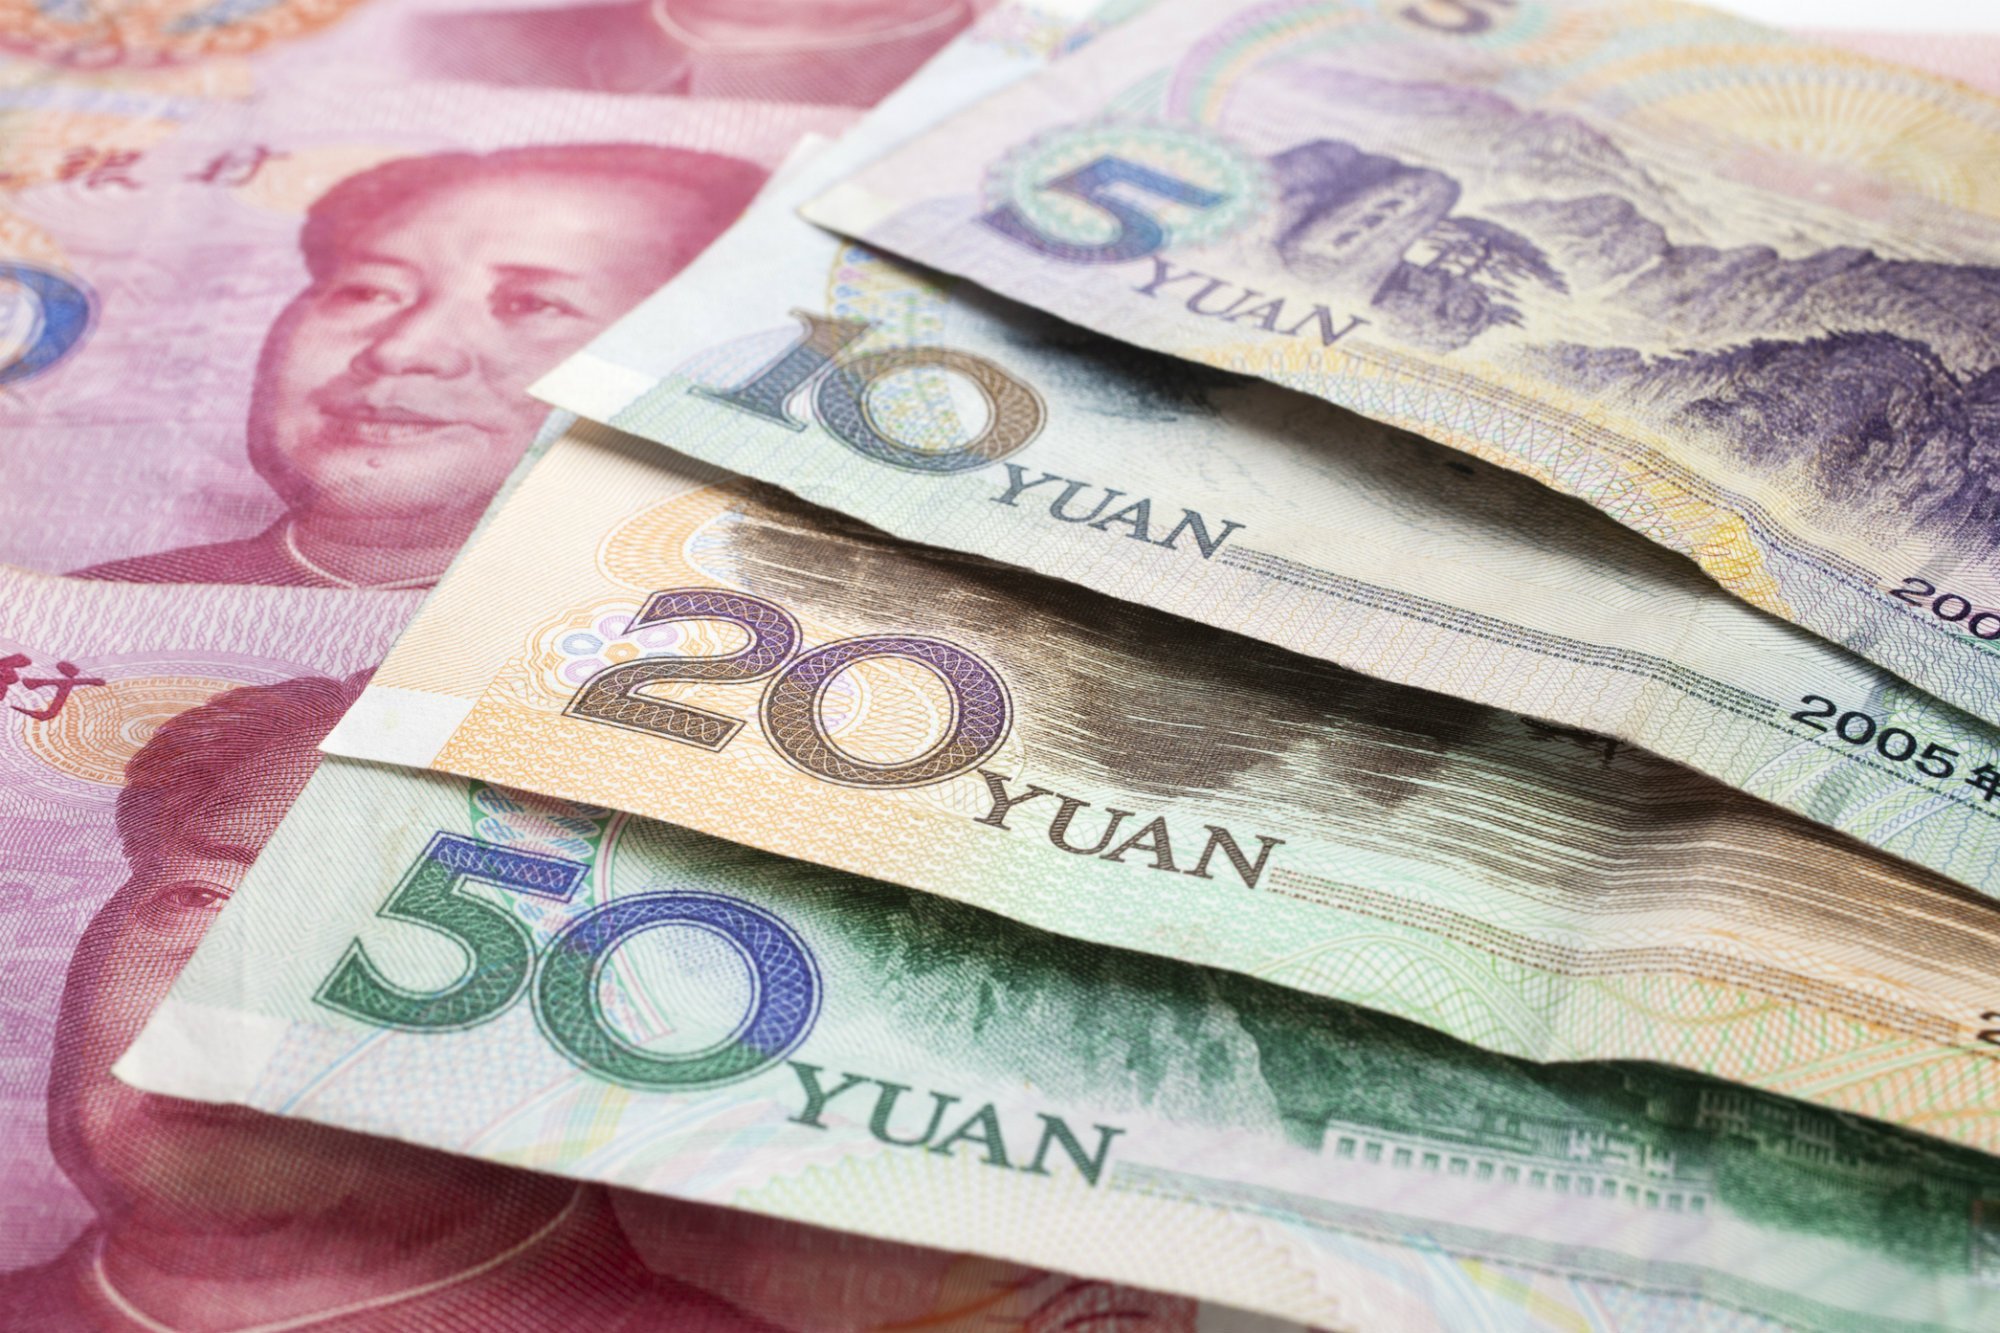 Đổi 1 vạn tiền Trung Quốc bằng bao nhiêu tiền Việt Nam